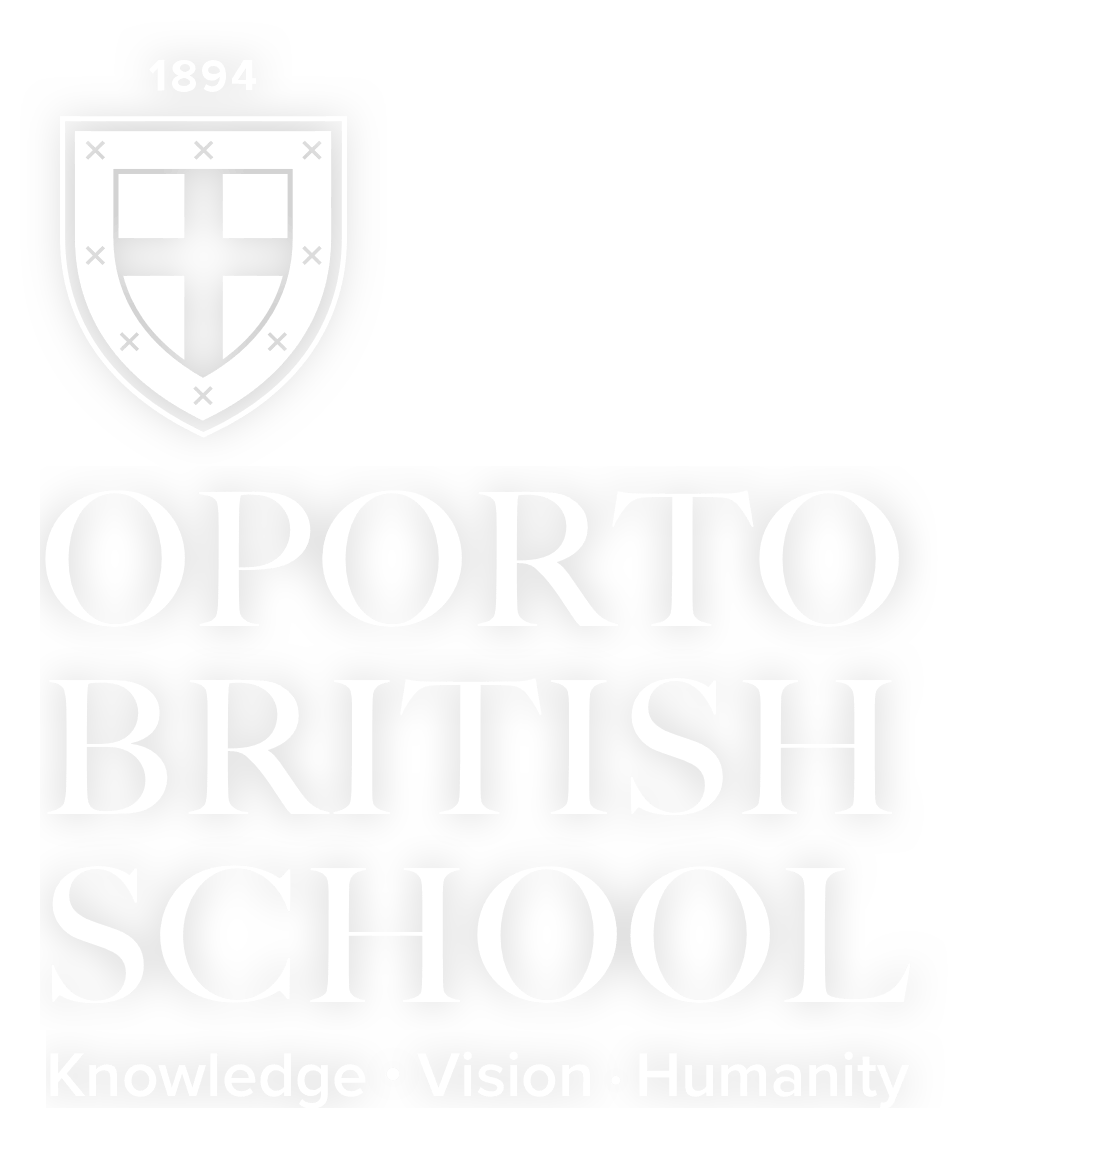 Instituto Cultural Britânico do Porto (Oporto British School)